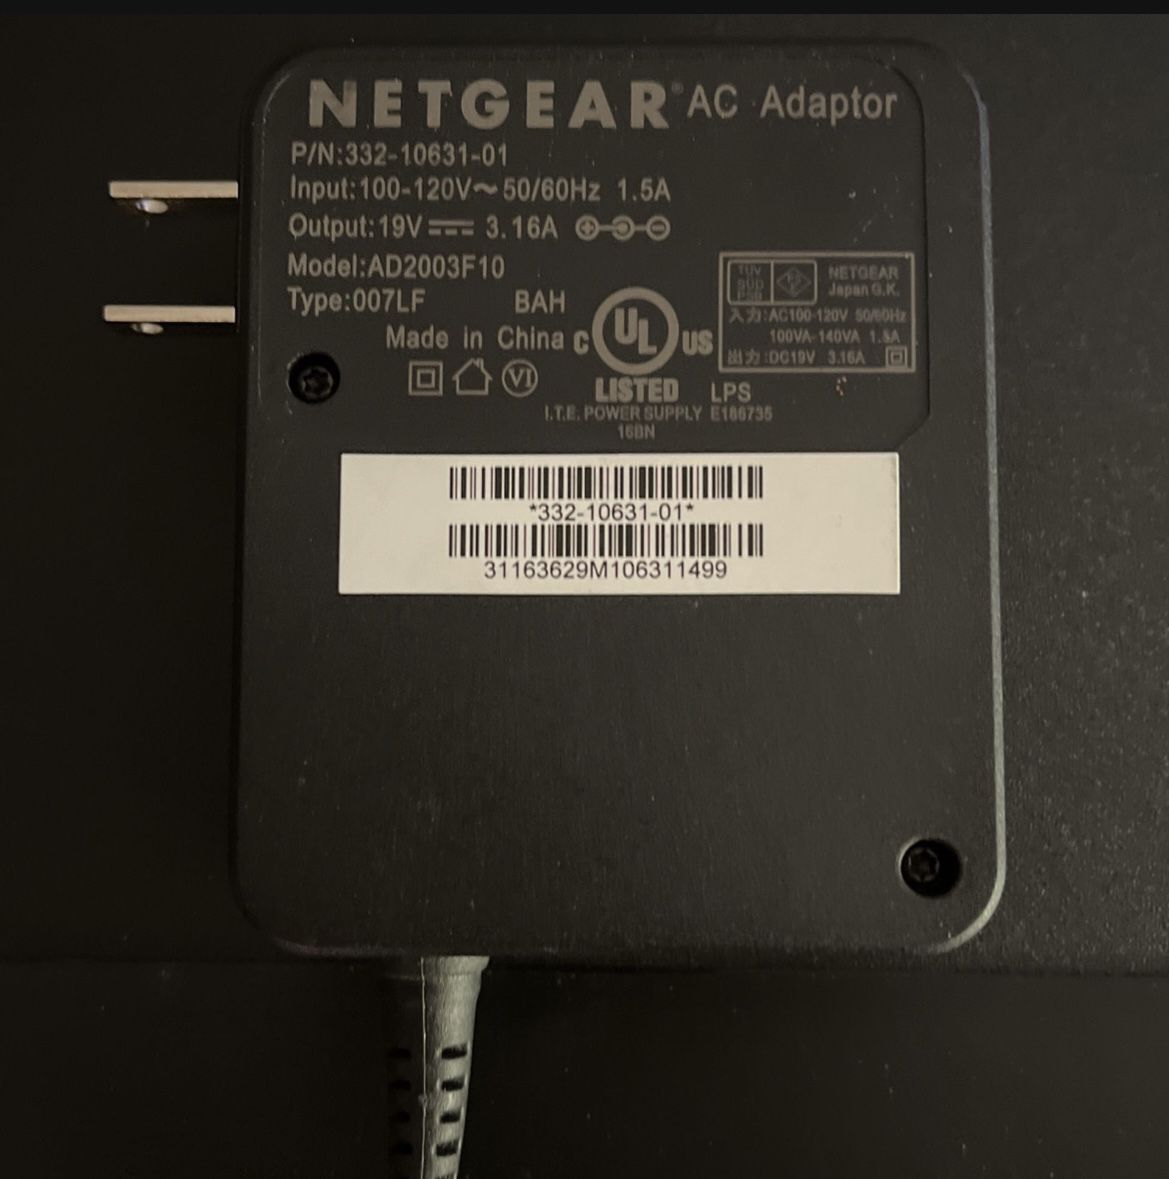 NETGEAR AC Adapter AD2003F10